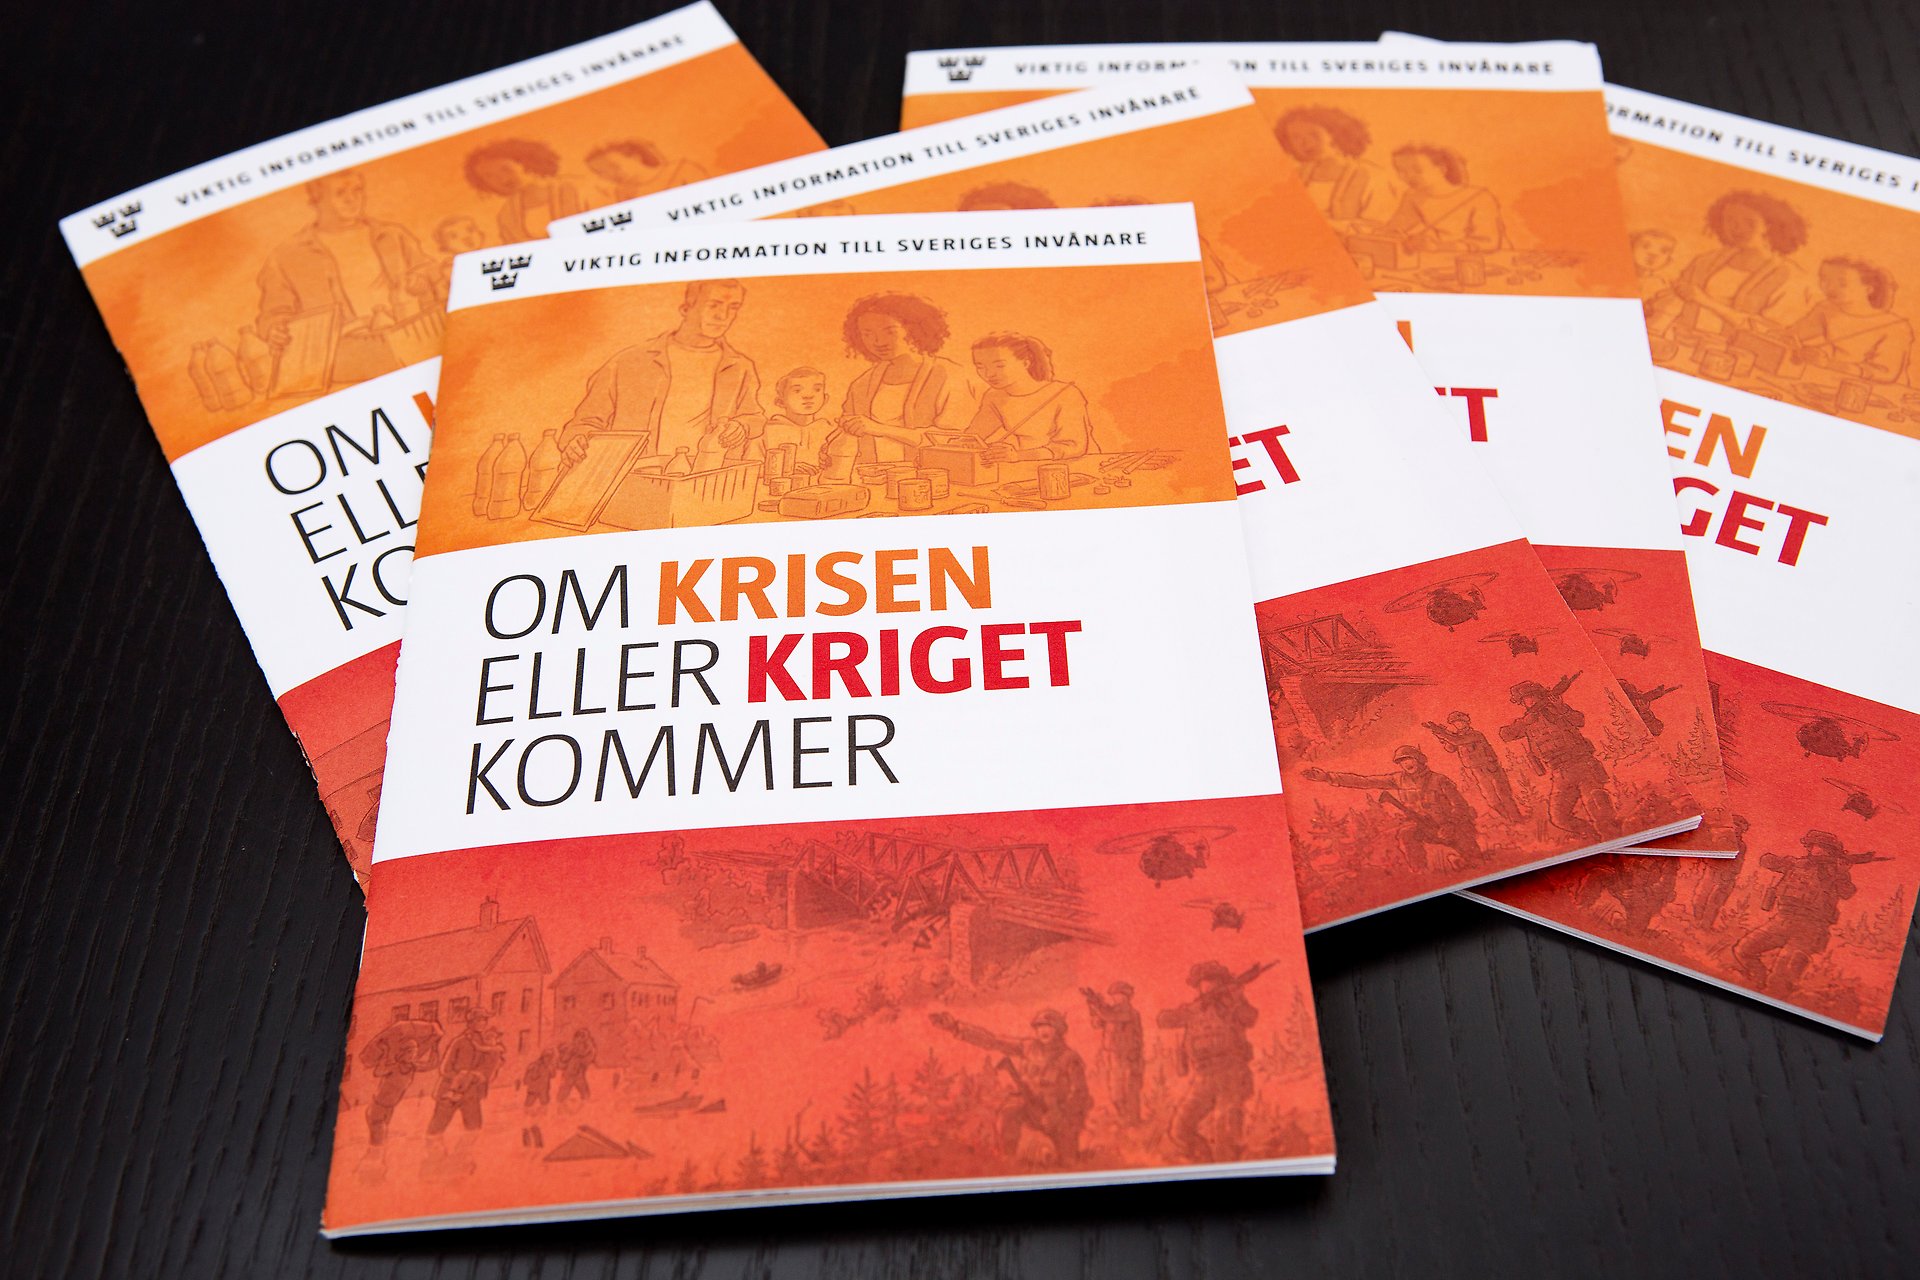 En hög med broschyrer som ligger på en svart bakgrund. Broschyren är i orange och rött och har titeln "Om krisen eller kriget kommer".